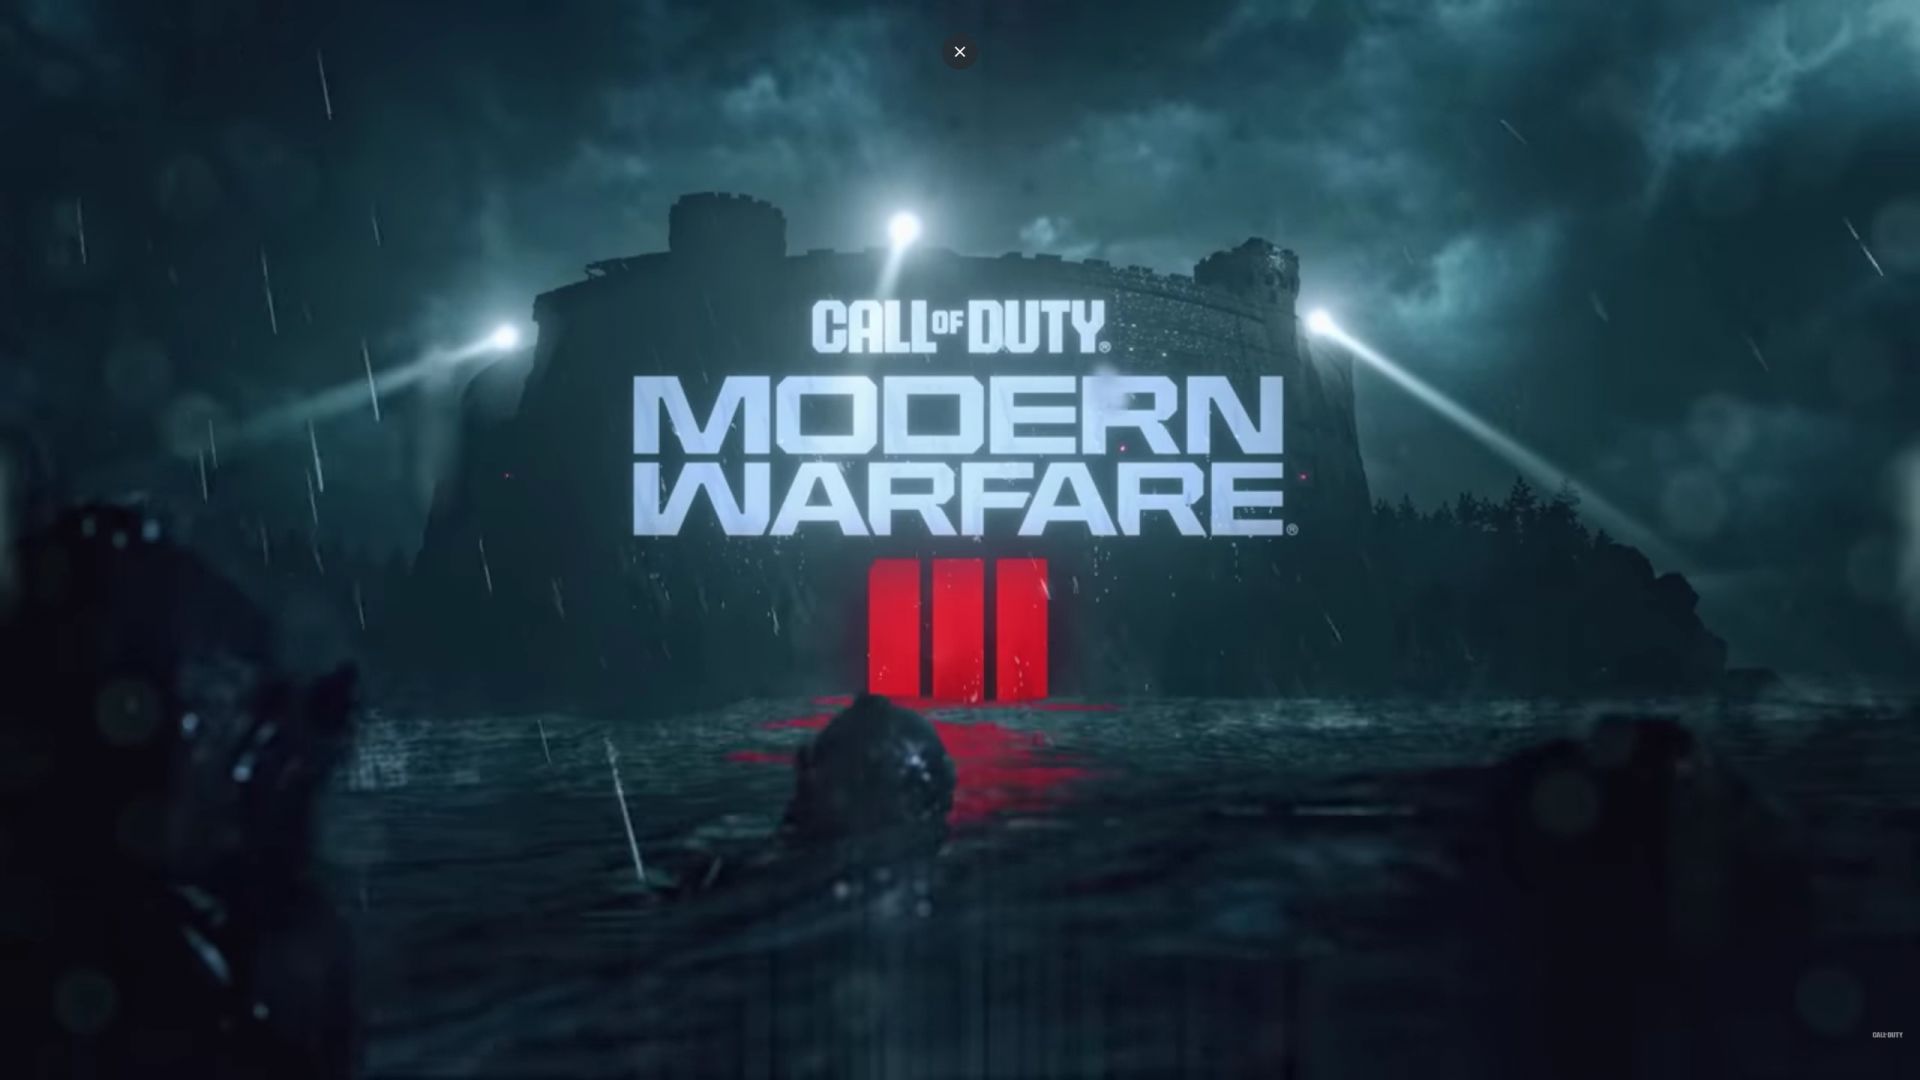 Call of Duty: Modern Warfare III – Découvrez la vidéo du reveal dévoilée dans Warzone et toutes les informations connues - GEEKNPLAY En avant, Home, News, PC, PlayStation 4, PlayStation 5, Xbox One, Xbox Series X|S